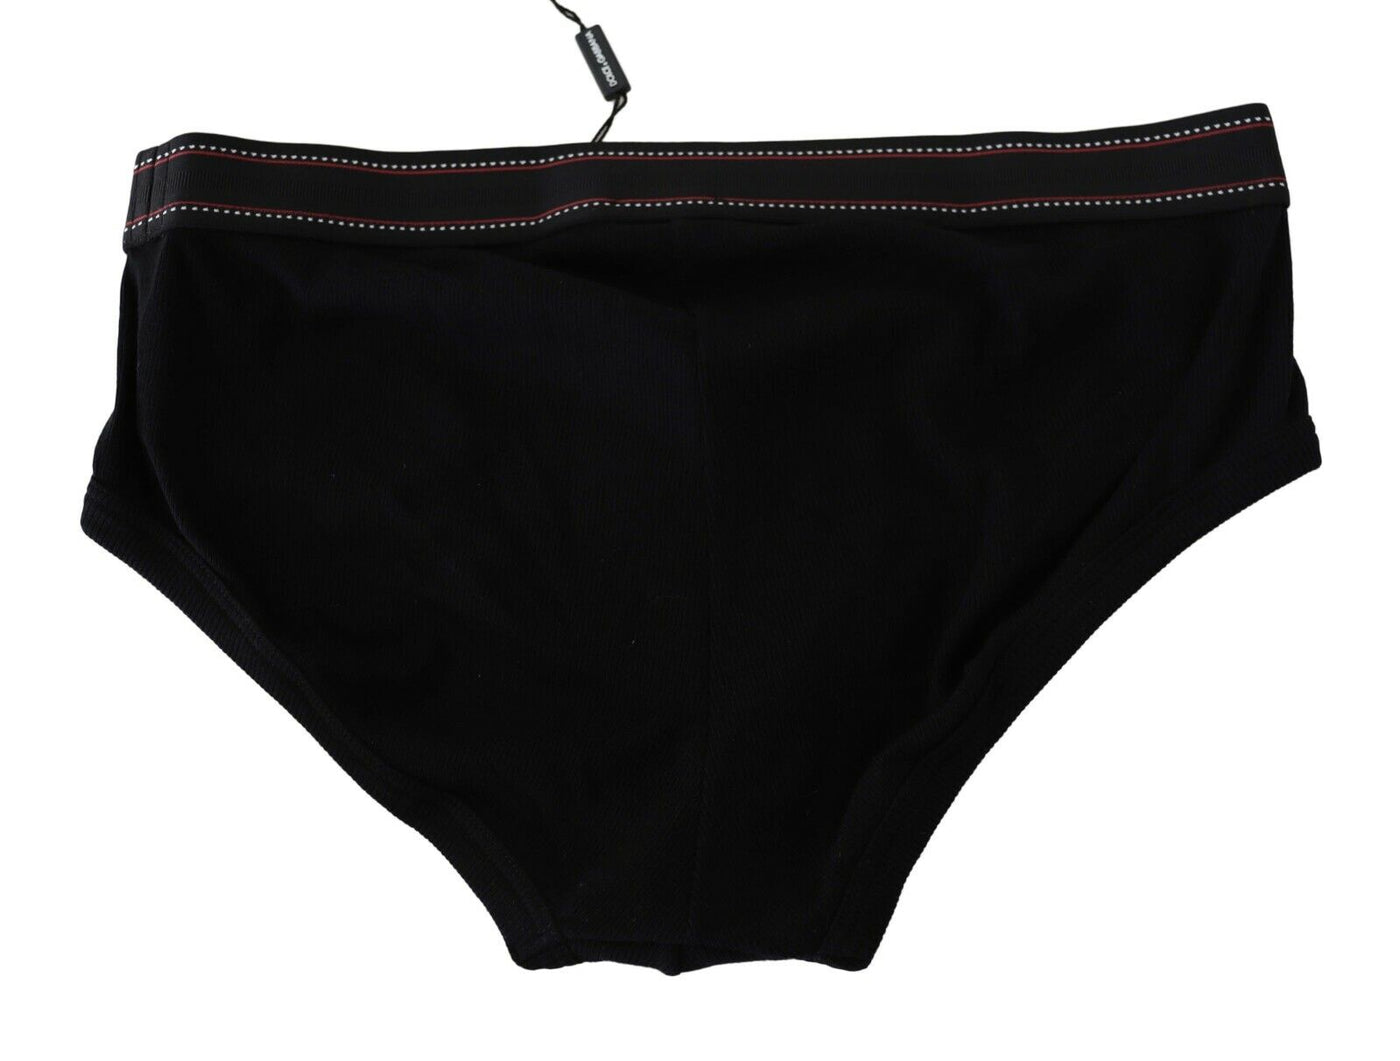 Black Cotton Stretch Slip Brando Brief Underwear